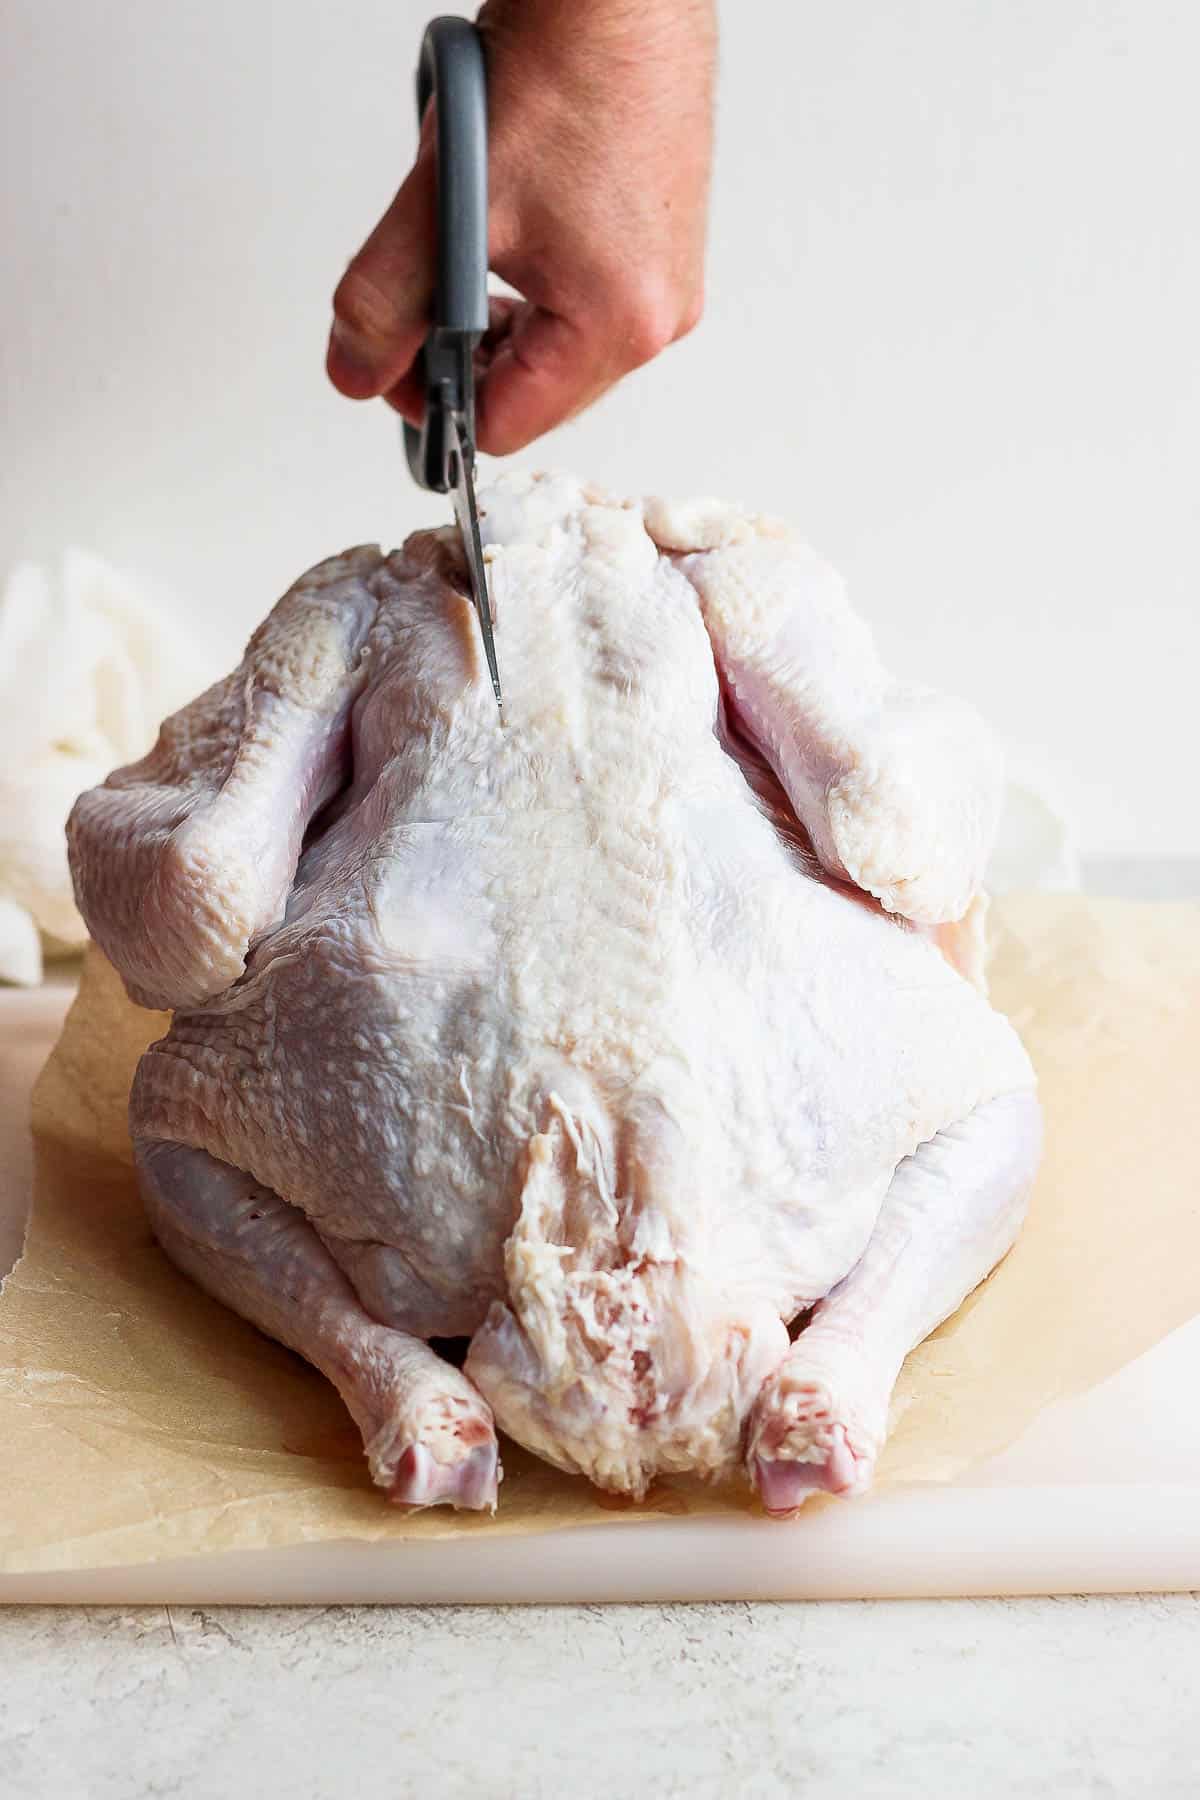 Sharp kitchen shears cutting into a whole turkey near the backbone.